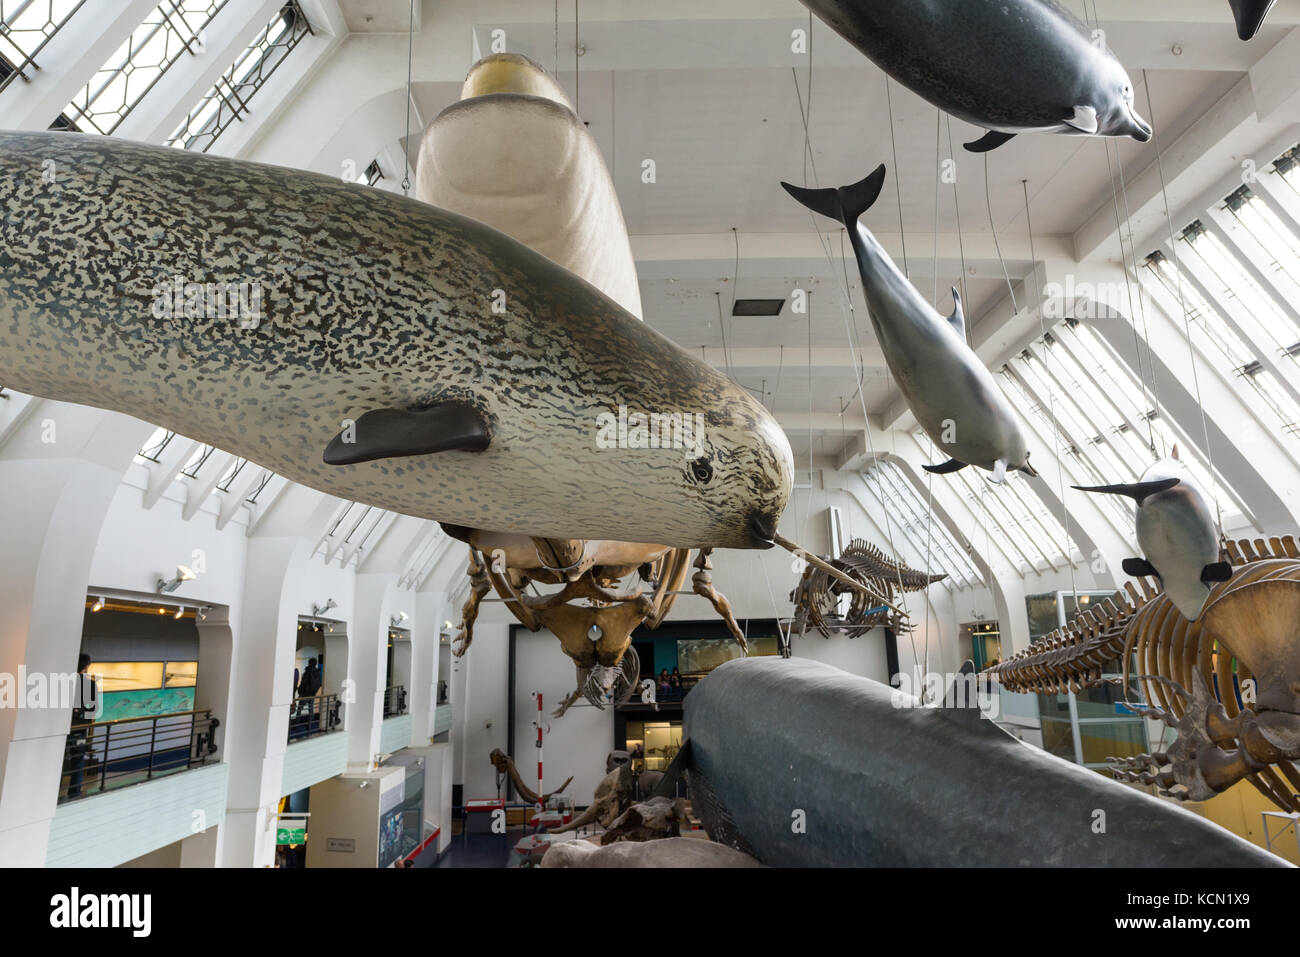 Suspendido narval, ballenas y delfines, exposiciones en el Museo de Historia Natural de Londres, Reino Unido Foto de stock